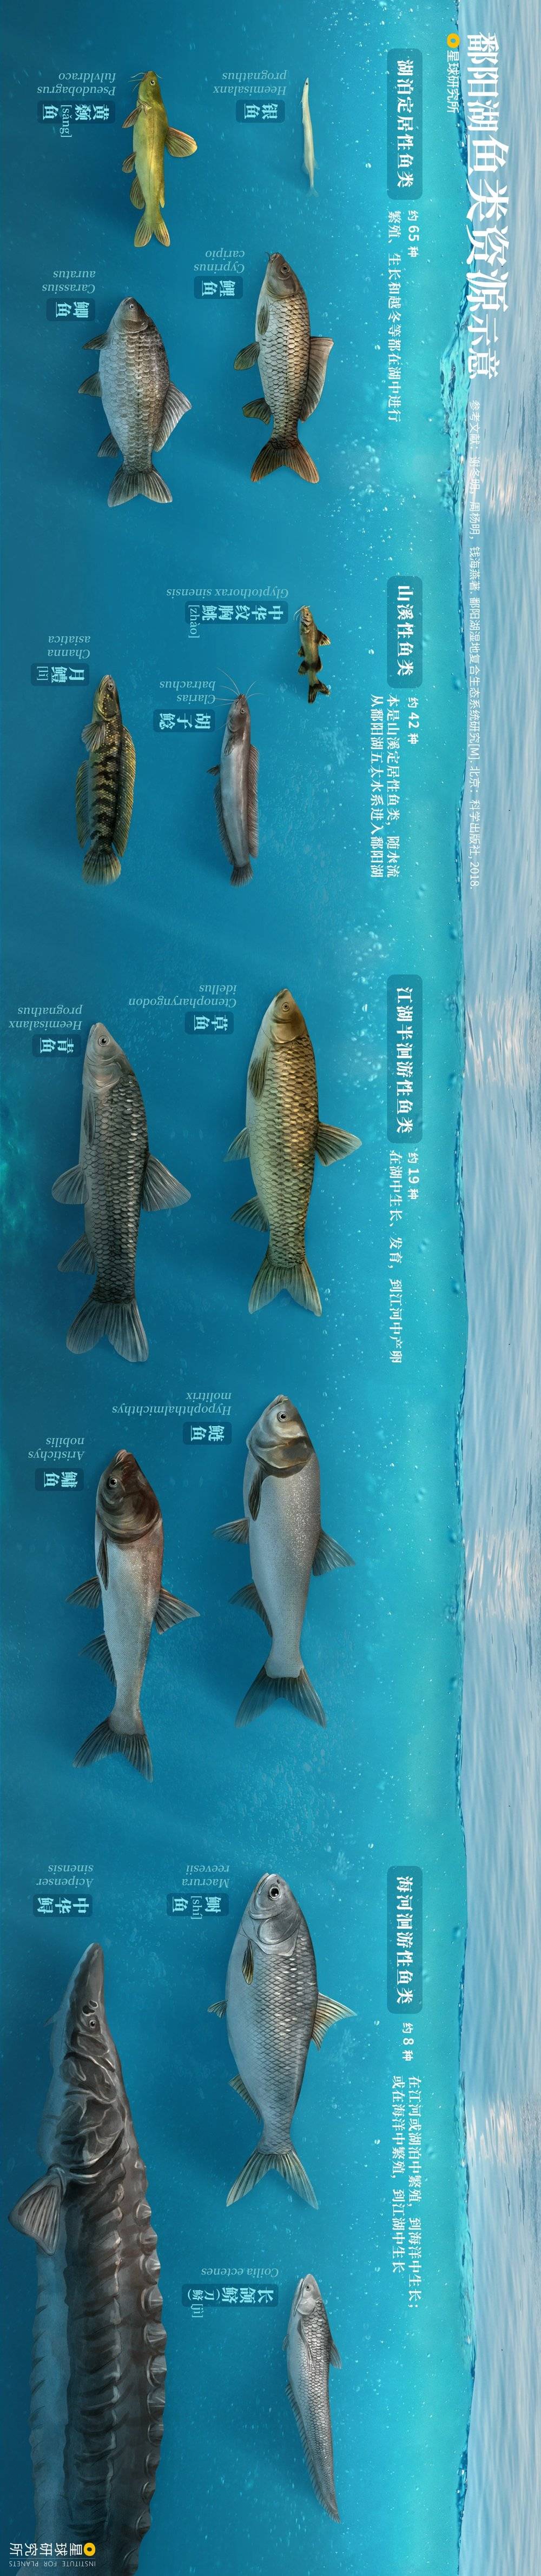 鄱阳湖鱼类资源示意，制图@龙雁翎/星球研究所